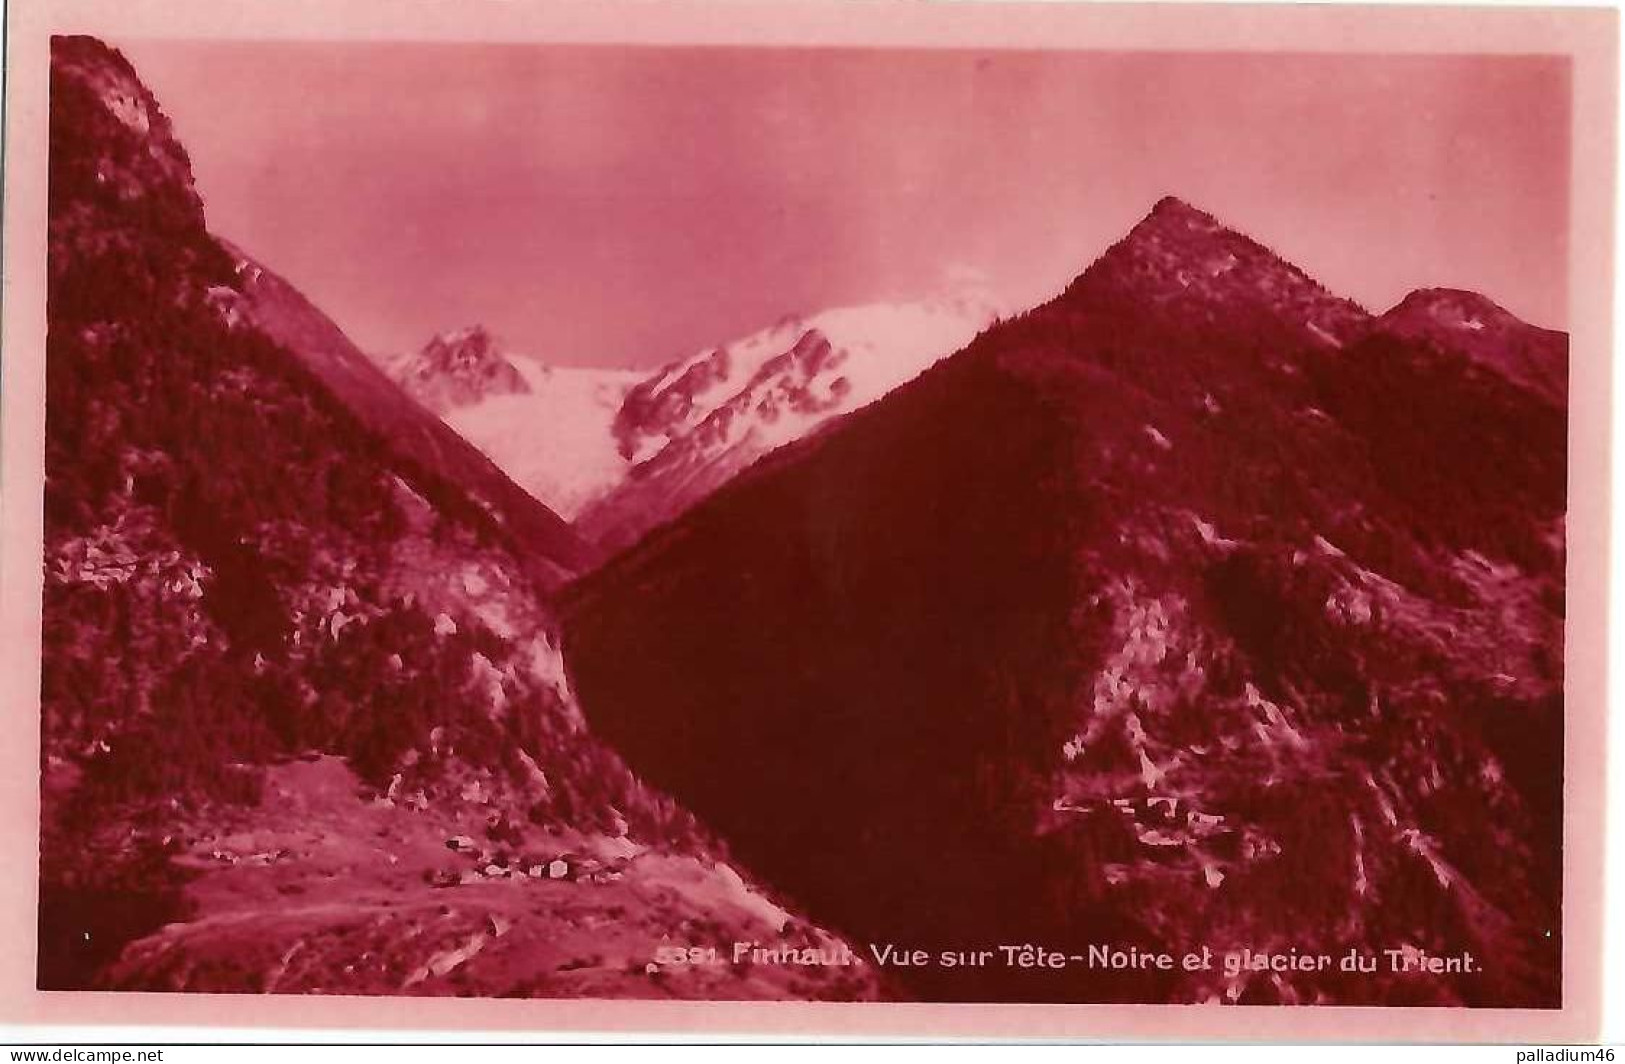 VS - Finhaut Vue Sur Tête-Noire Et Glacier Du Trient - BAZAR DE LA POSTE ROSE 5391 - NEUVE ETAT IMPECCABLE - Finhaut